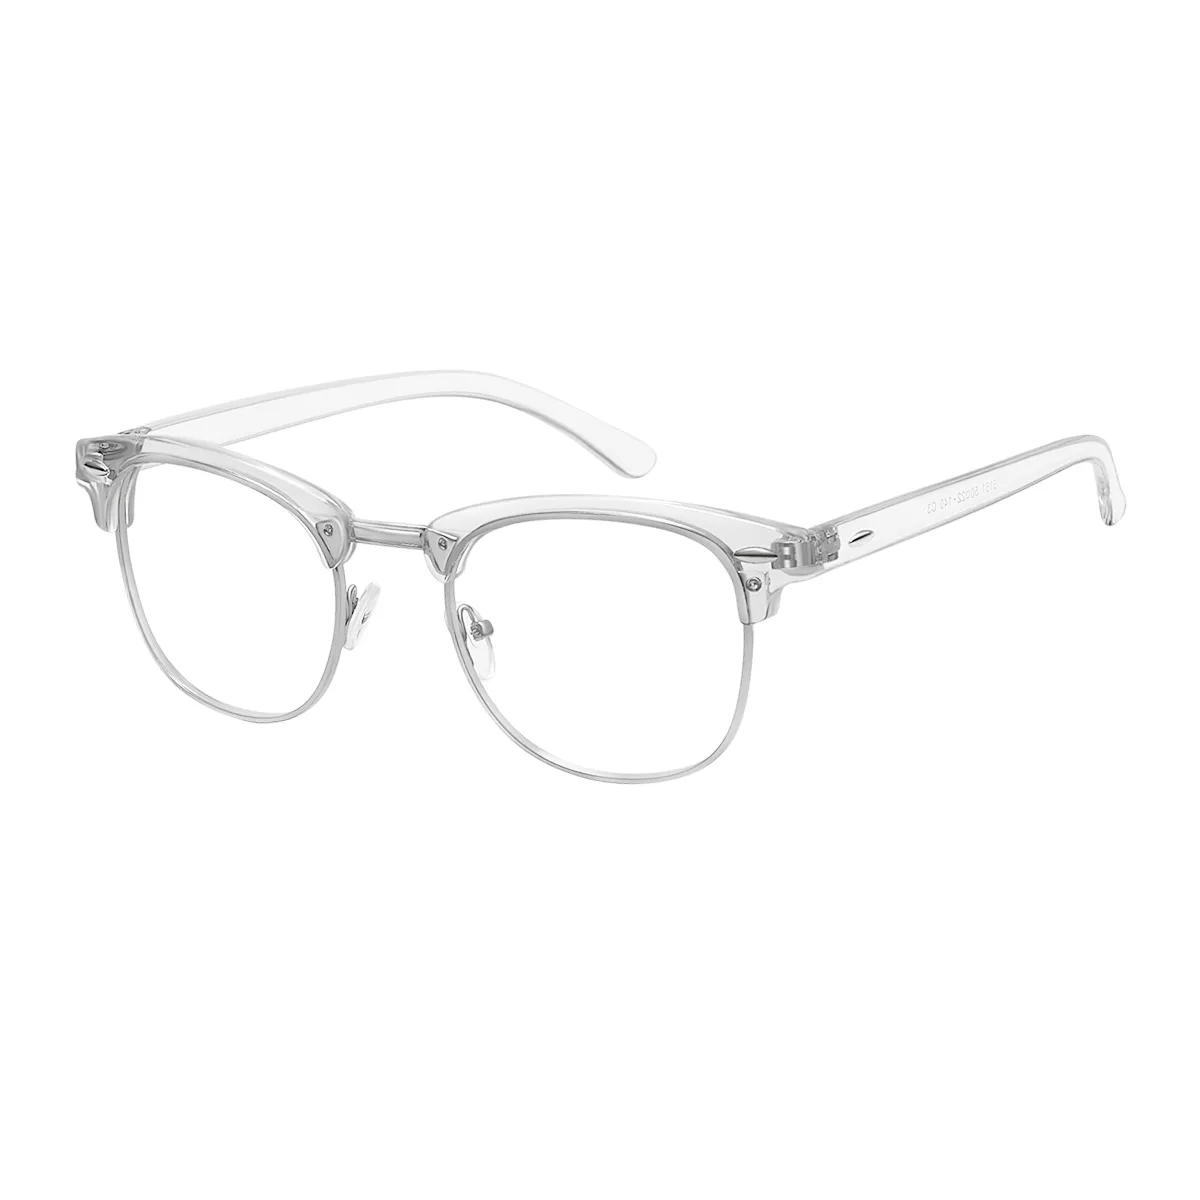 Floyd - Browline Translucent Glasses for Men & Women - EFE